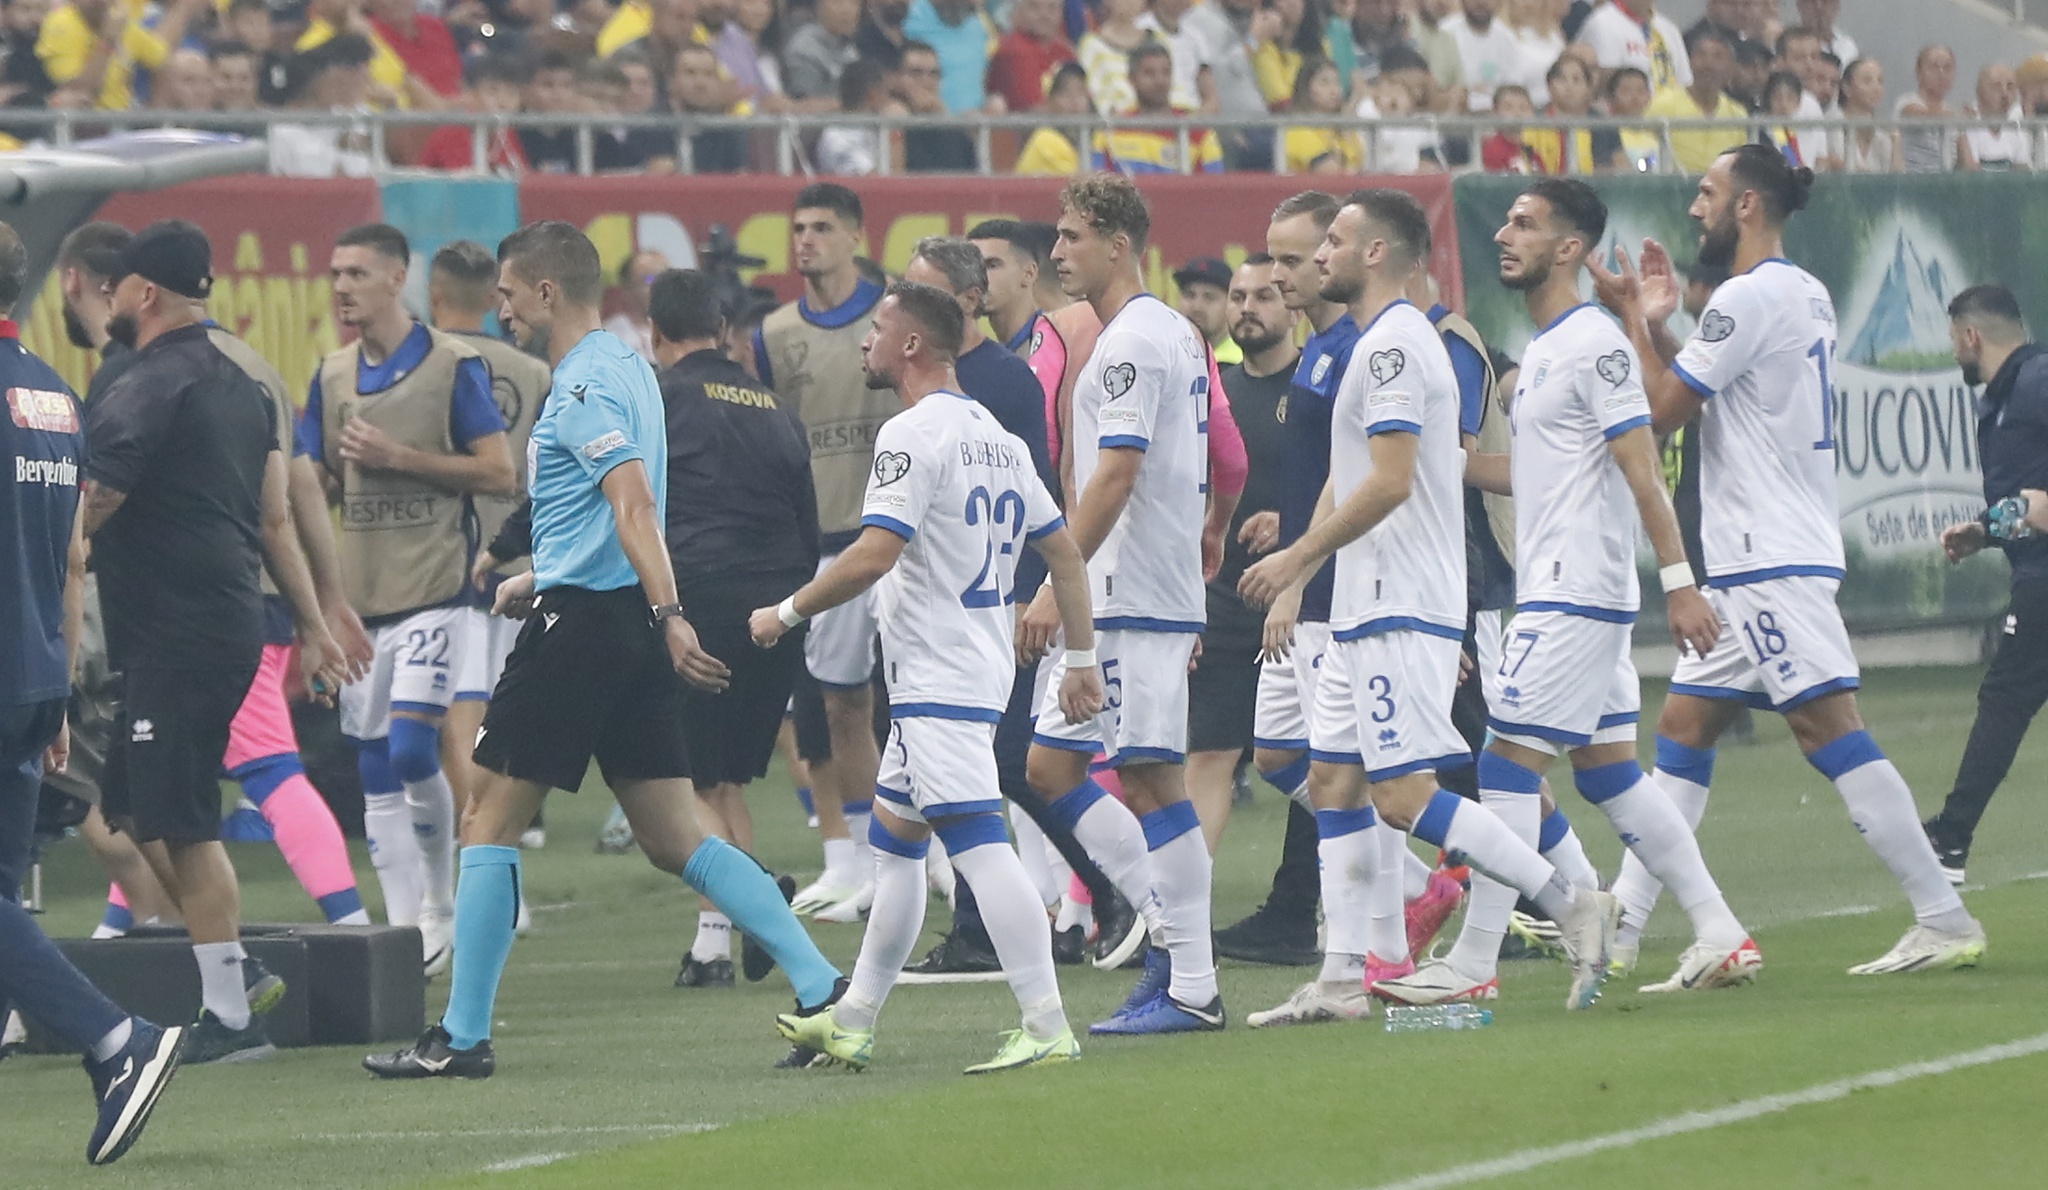 La politique a arrêté le football en Roumanie |  Football international